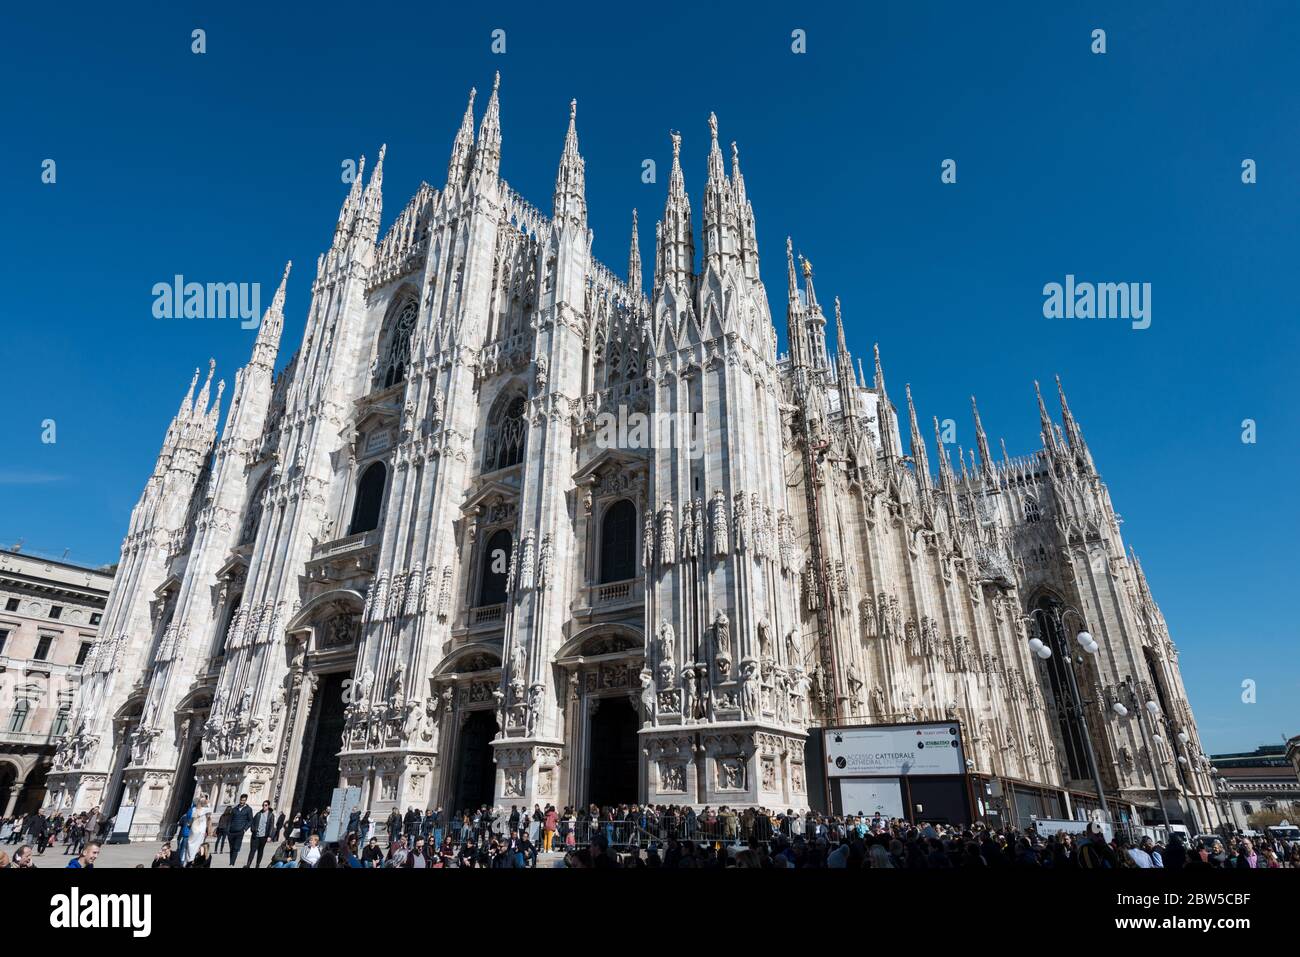 MAILAND, ITALIEN - 16, MÄRZ 2018: Horizontale Abbildung der erstaunlichen Architektur des Mailänder Doms, einer wichtigen katholischen Kathedrale in Mailand, Italien. Stockfoto